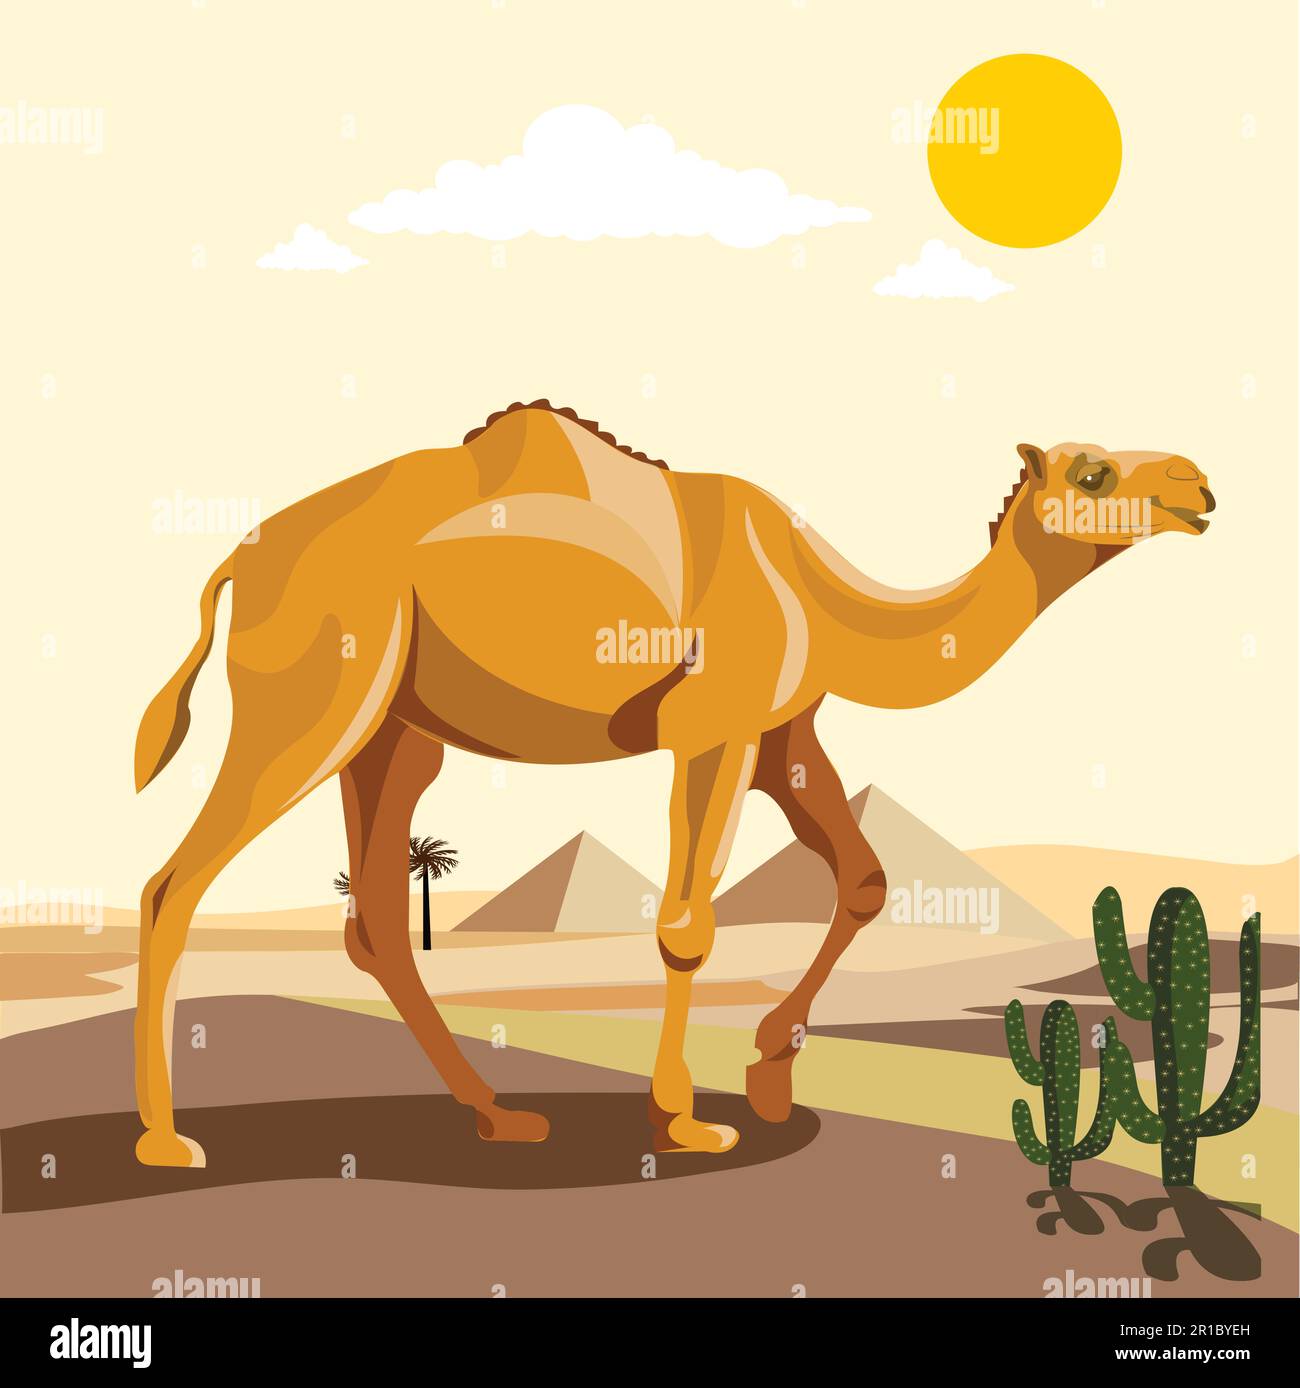 Wüstenkamel-Komposition mit Ödland-Landschaft und flachen Bildern mit Kamelzug durch verlassene Orte Vektordarstellung. Ein Humpel-Kamel Stock Vektor